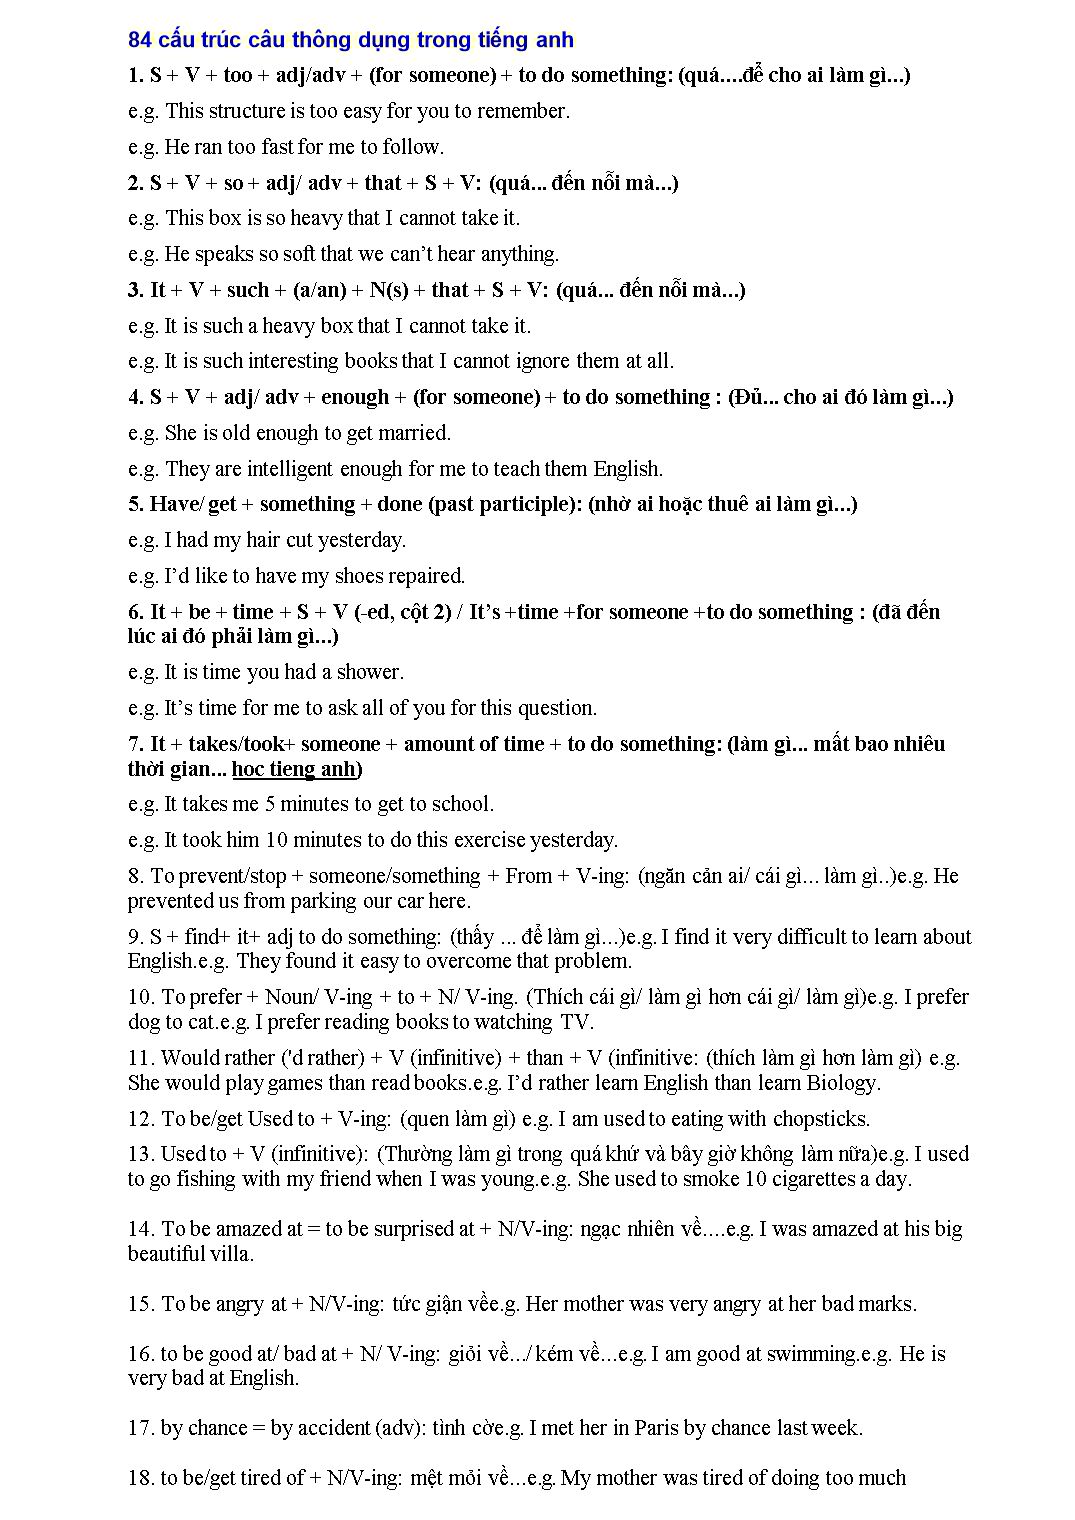 84 Cấu trúc câu thông dụng trong tiếng Anh trang 1